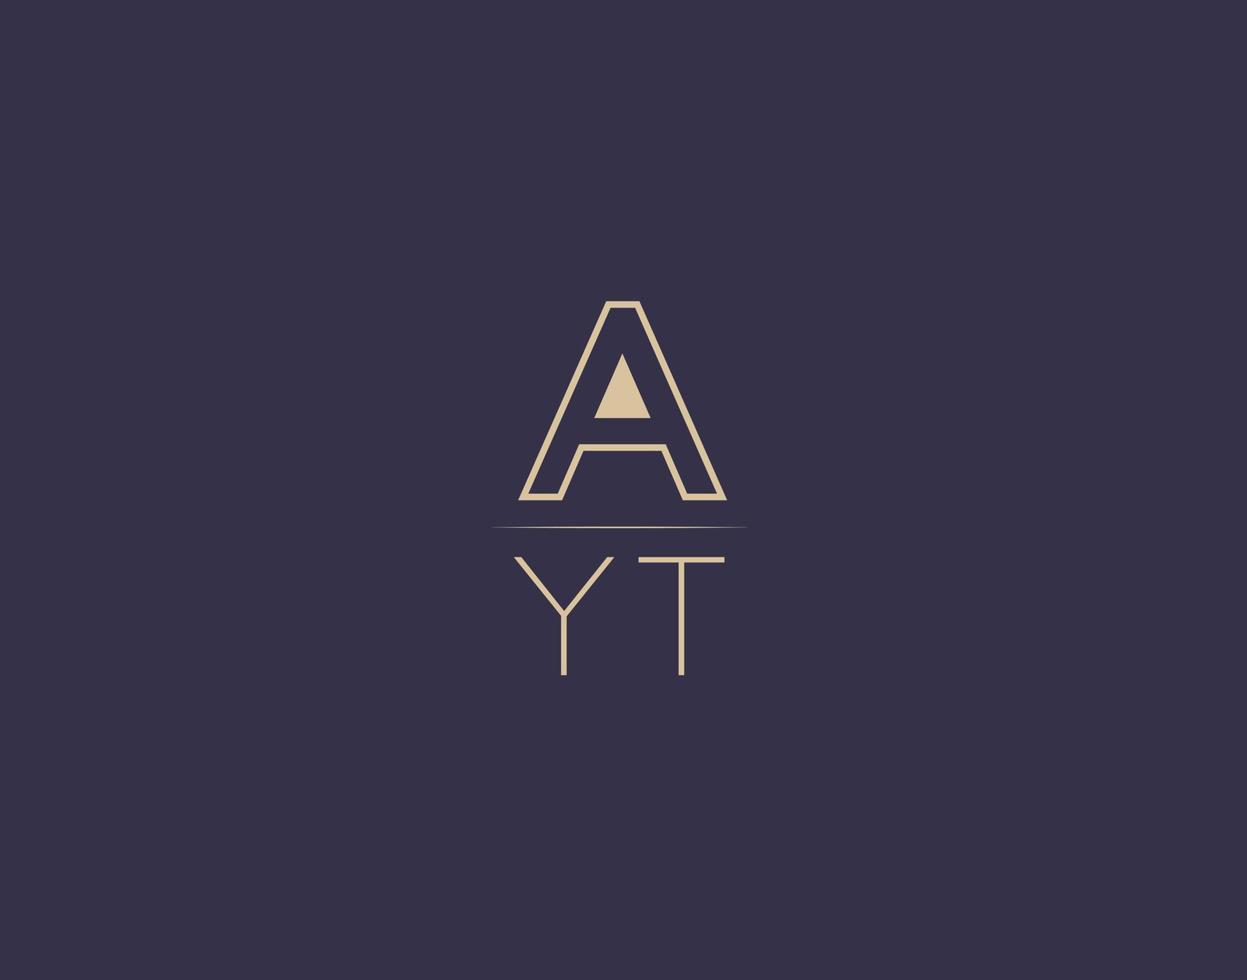 ayt brief logo ontwerp modern minimalistische vector afbeeldingen